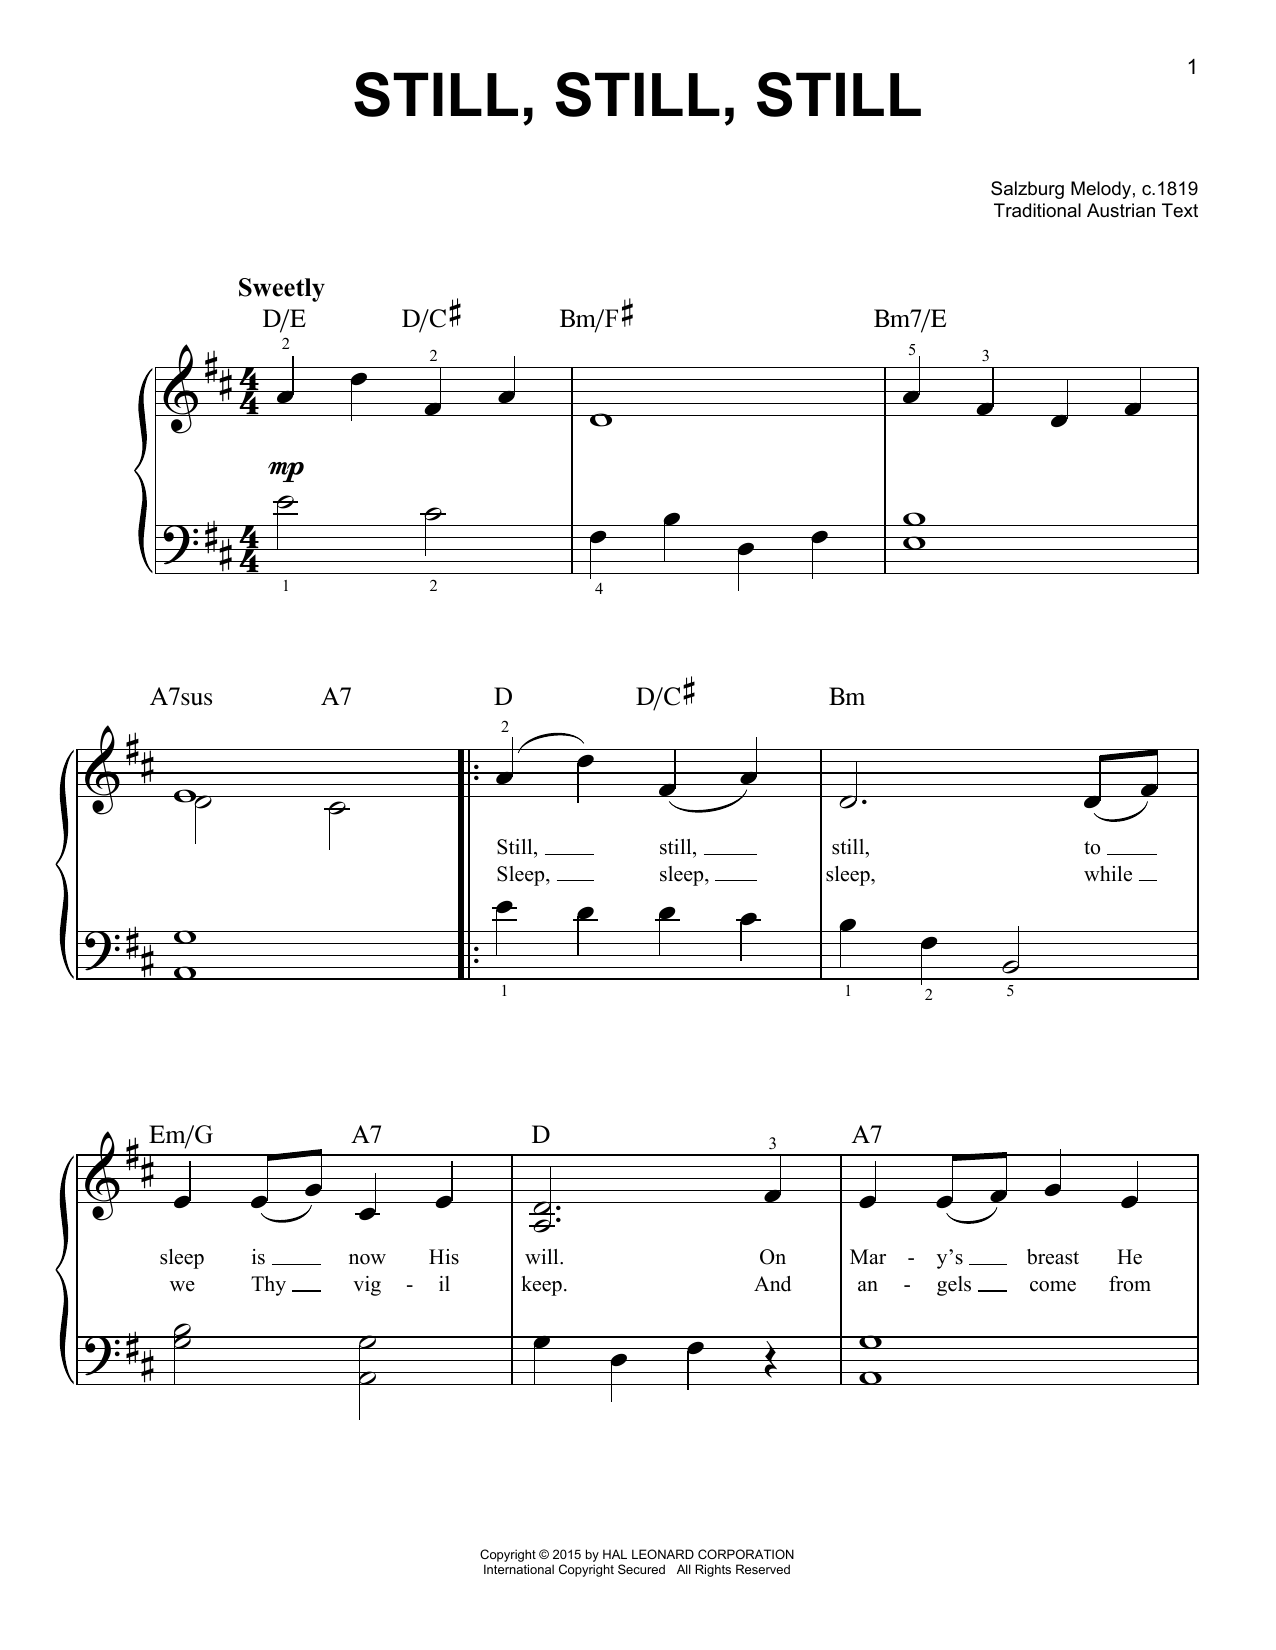 Salzburg Melody, c.1819 Still, Still, Still sheet music notes and chords arranged for Alto Sax Duet